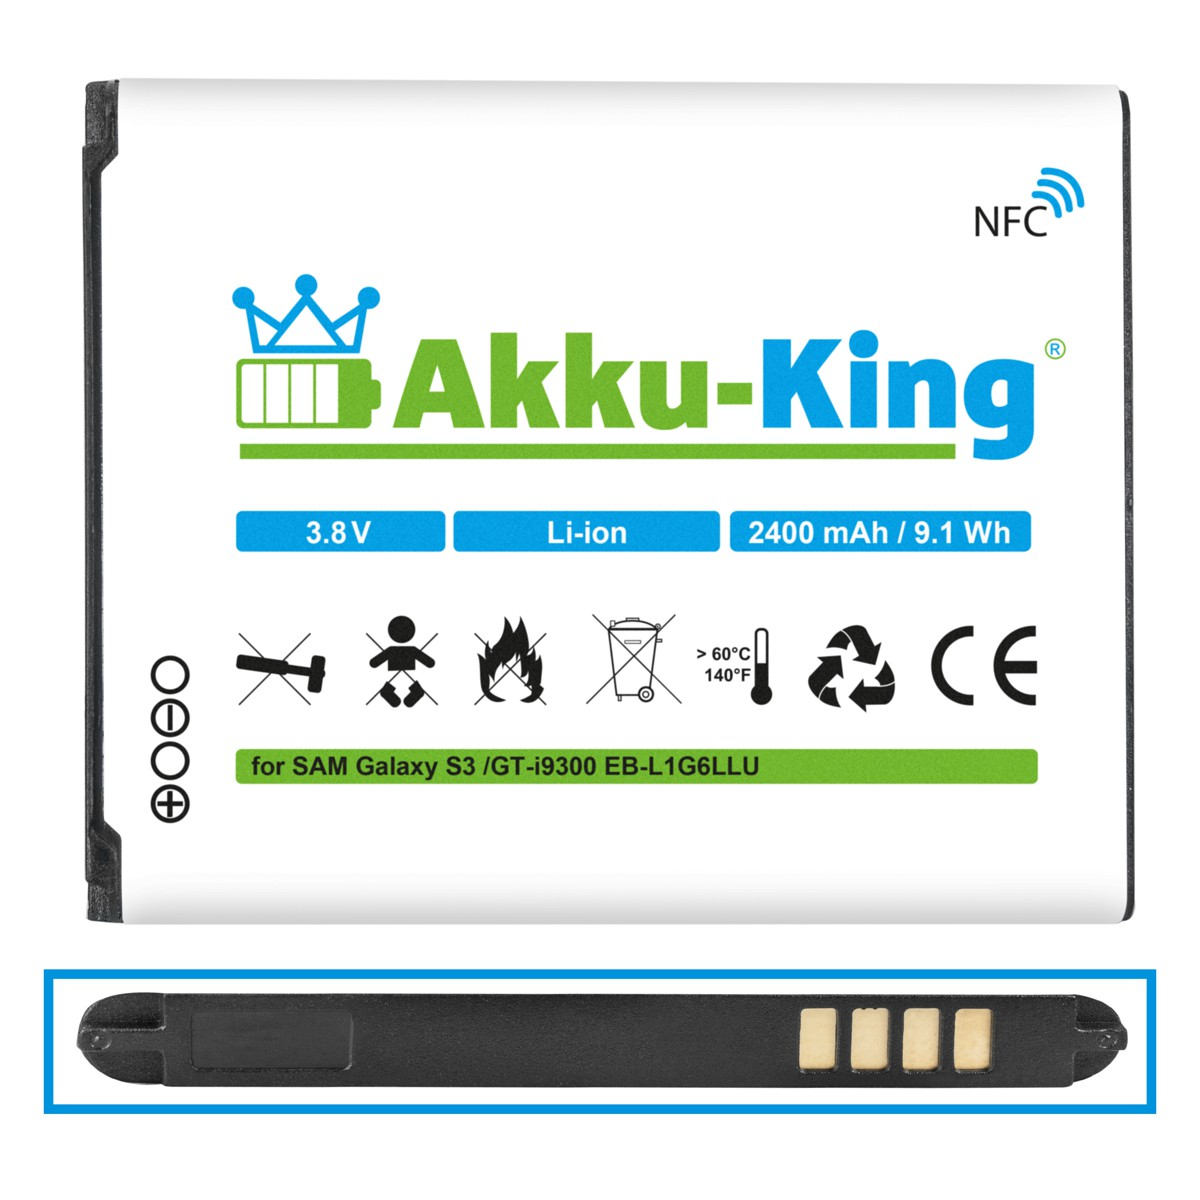 Volt, NFC 3.8 2400mAh Li-Ion mit Handy-Akku, Samsung Akku kompatibel AKKU-KING EB-L1G6LLU